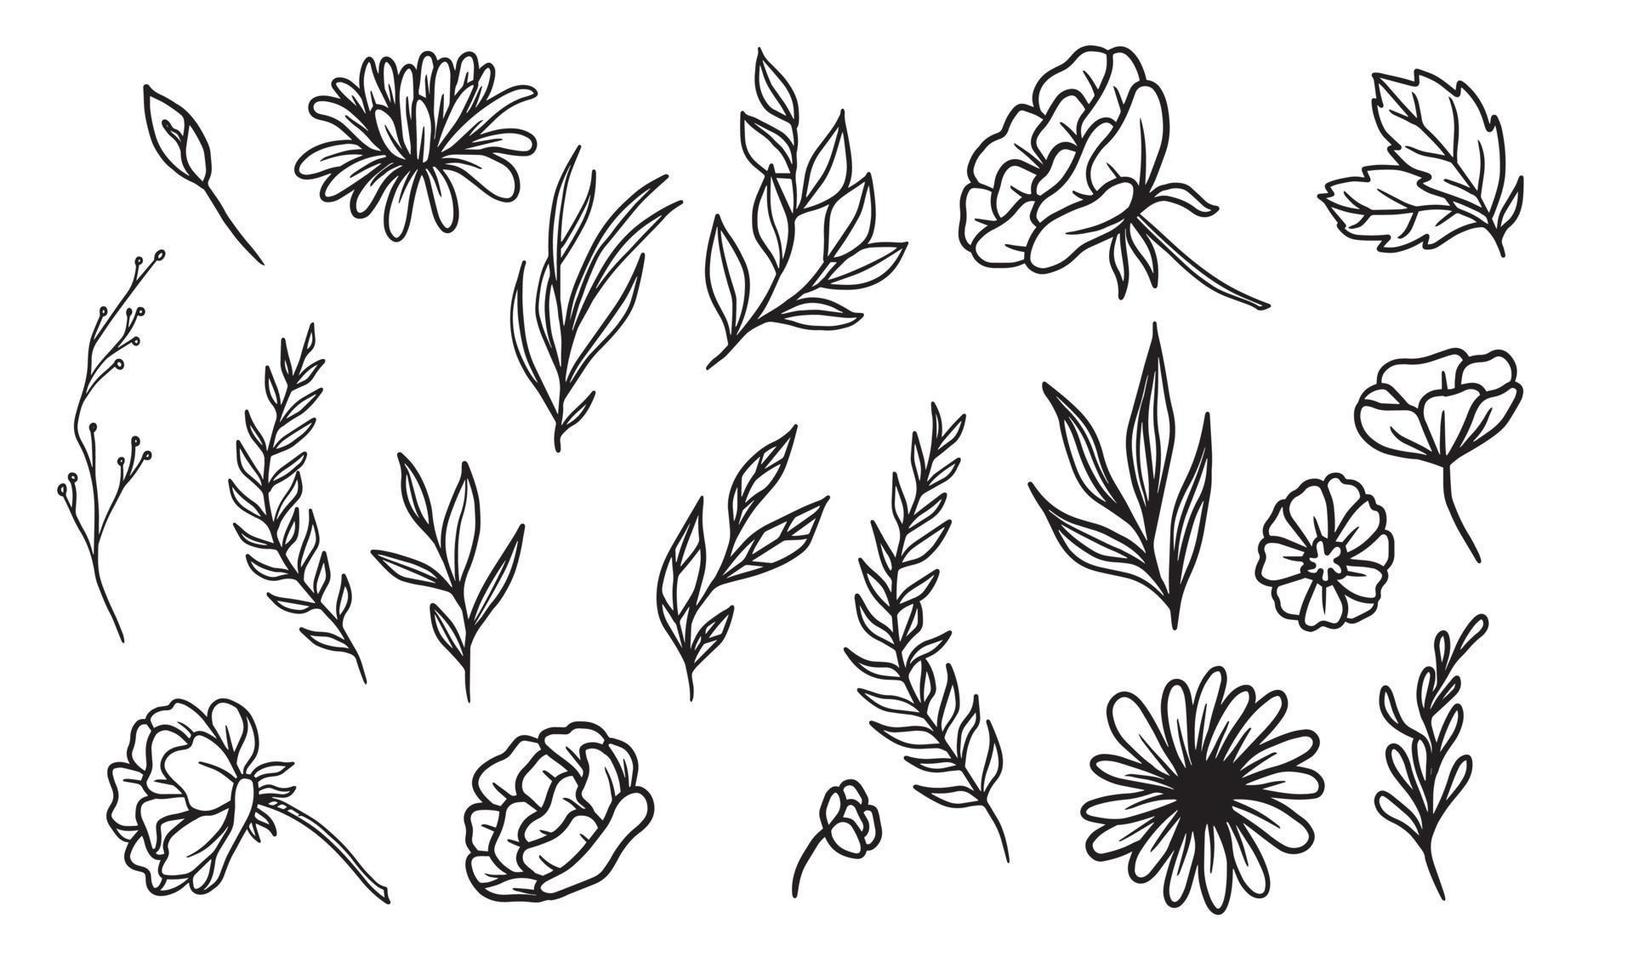 ensemble d'éléments floraux dessinés à la main pour votre conception, illustration de feuilles et de fleurs pour créer un design romantique ou vintage, graphique isolé de plante très facile à ajouter à votre projet de conception vecteur